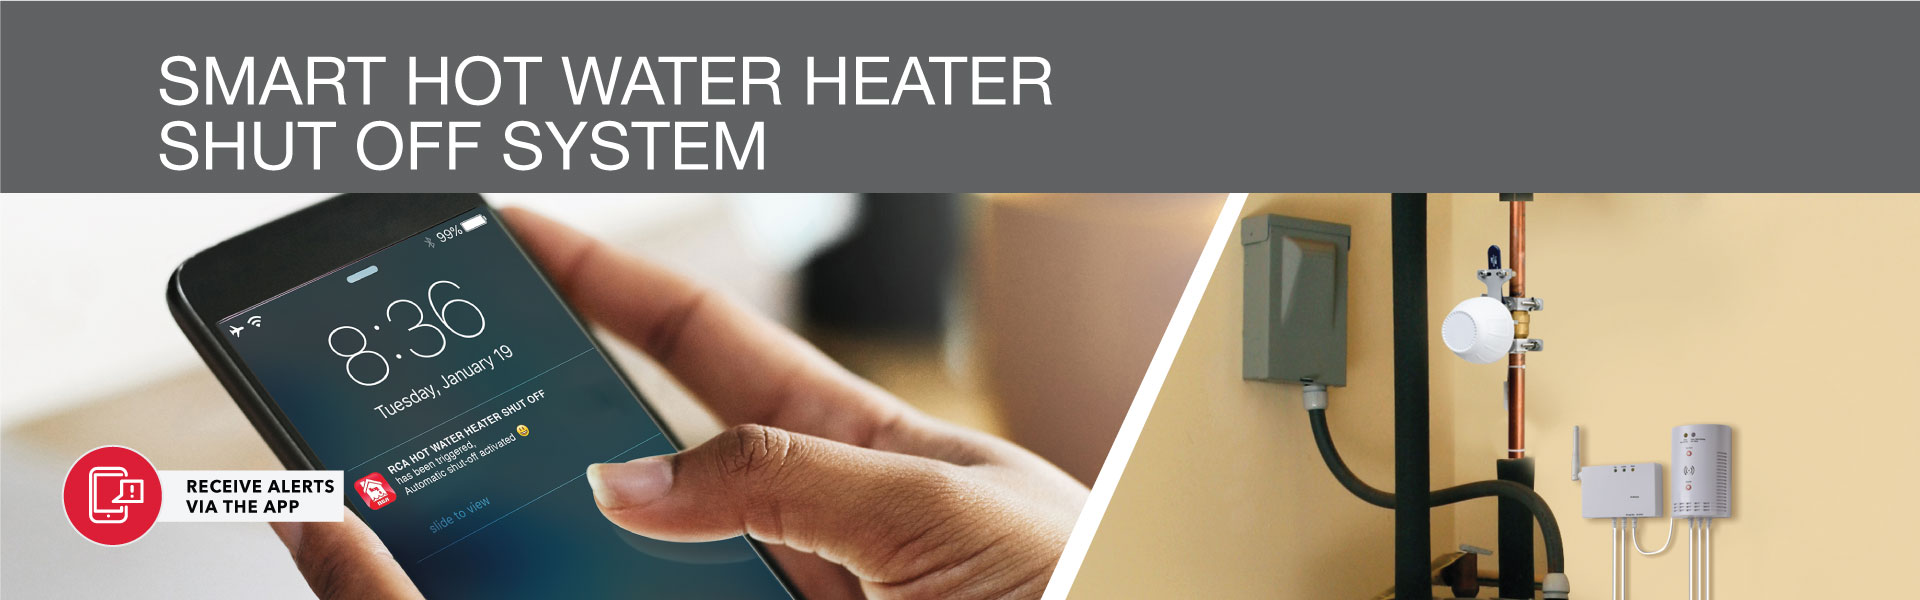 Smart Hot Water Heater Shut Off System